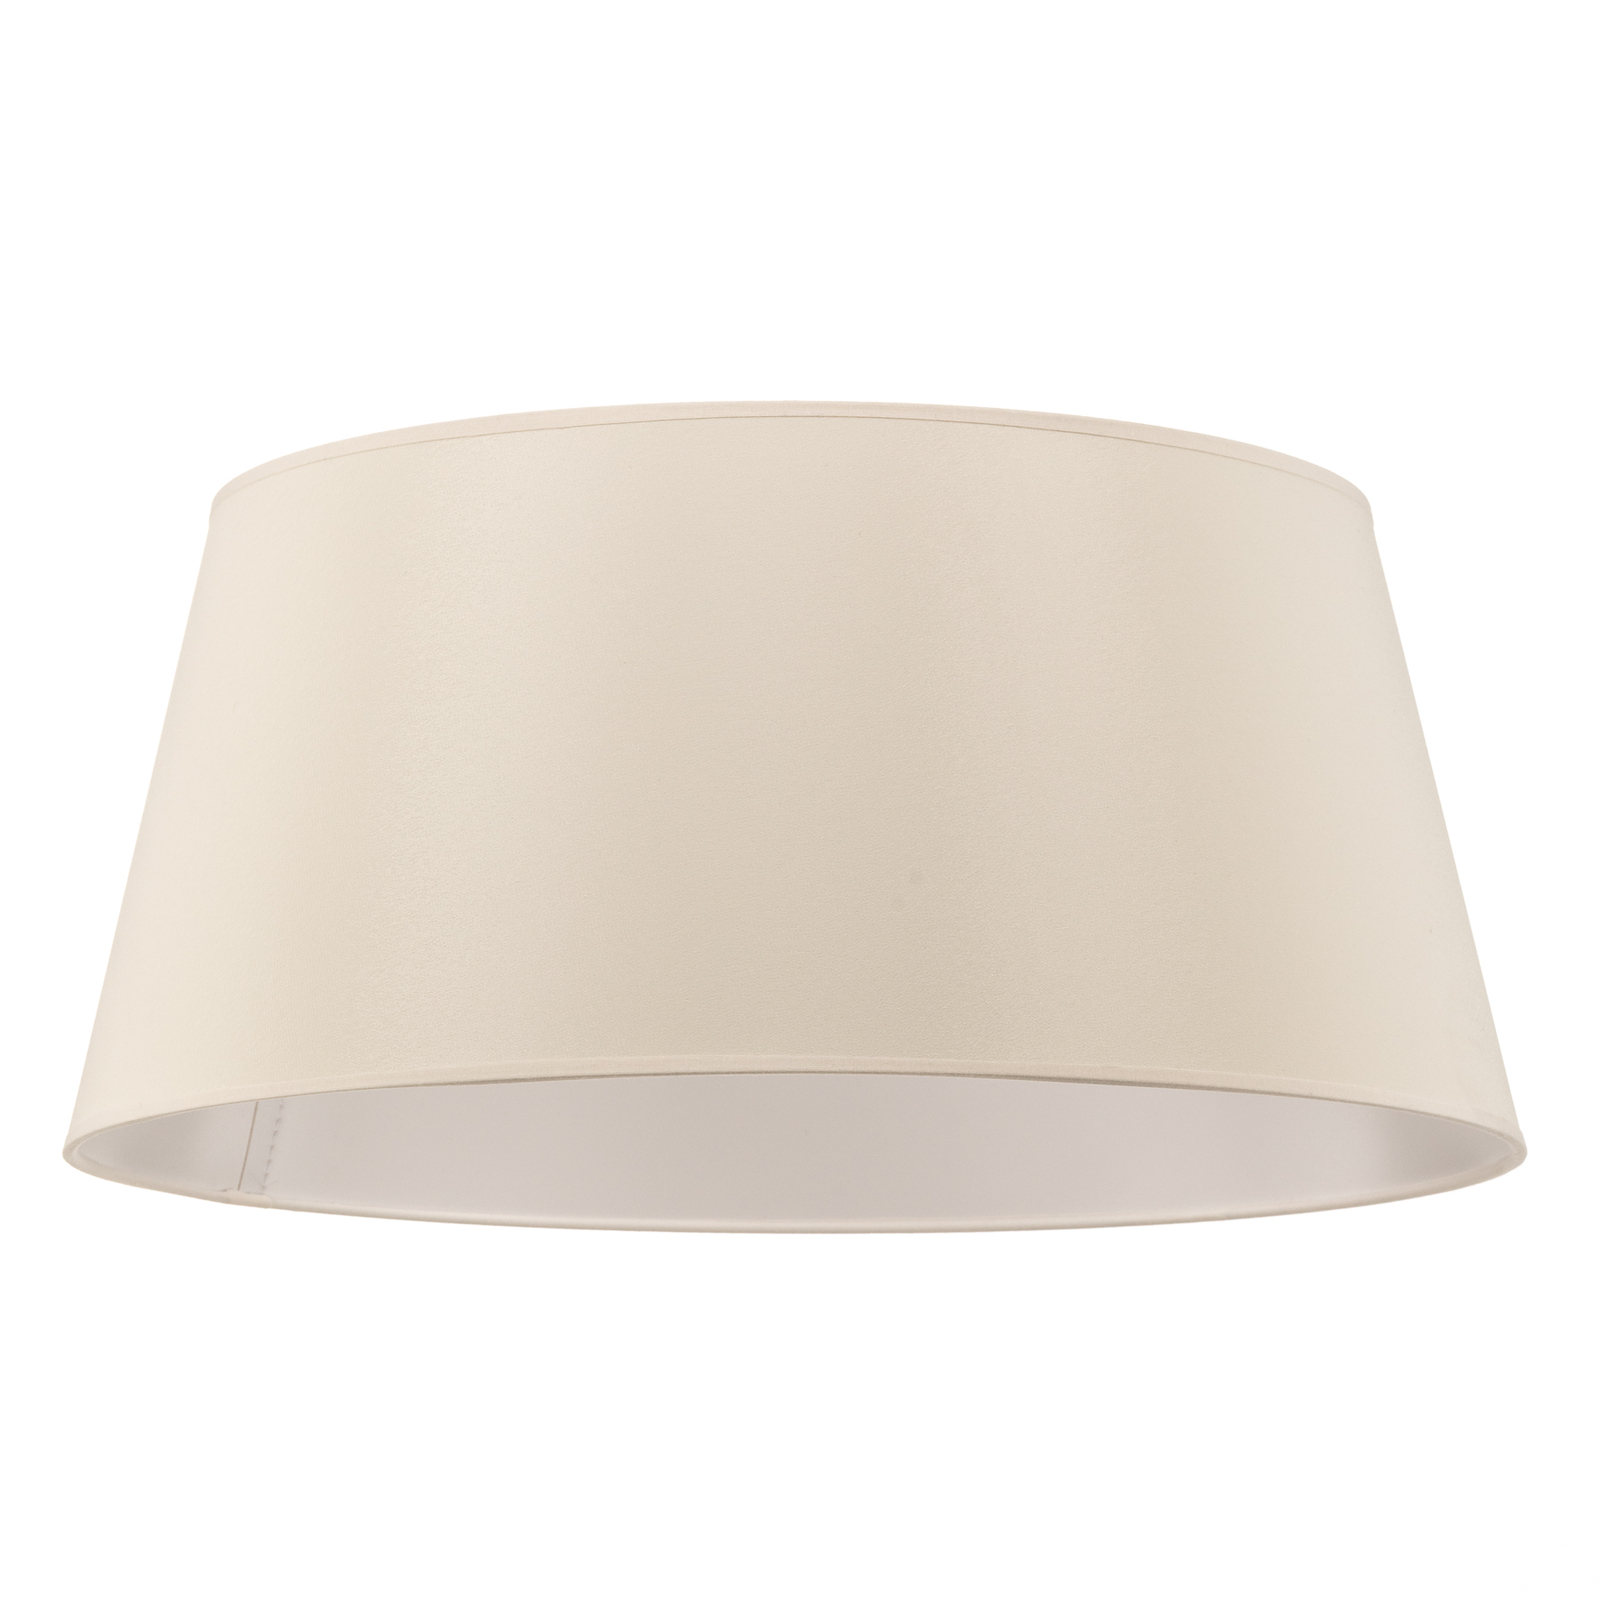 Cone lampshade height 22.5 cm, chintz ecru/white